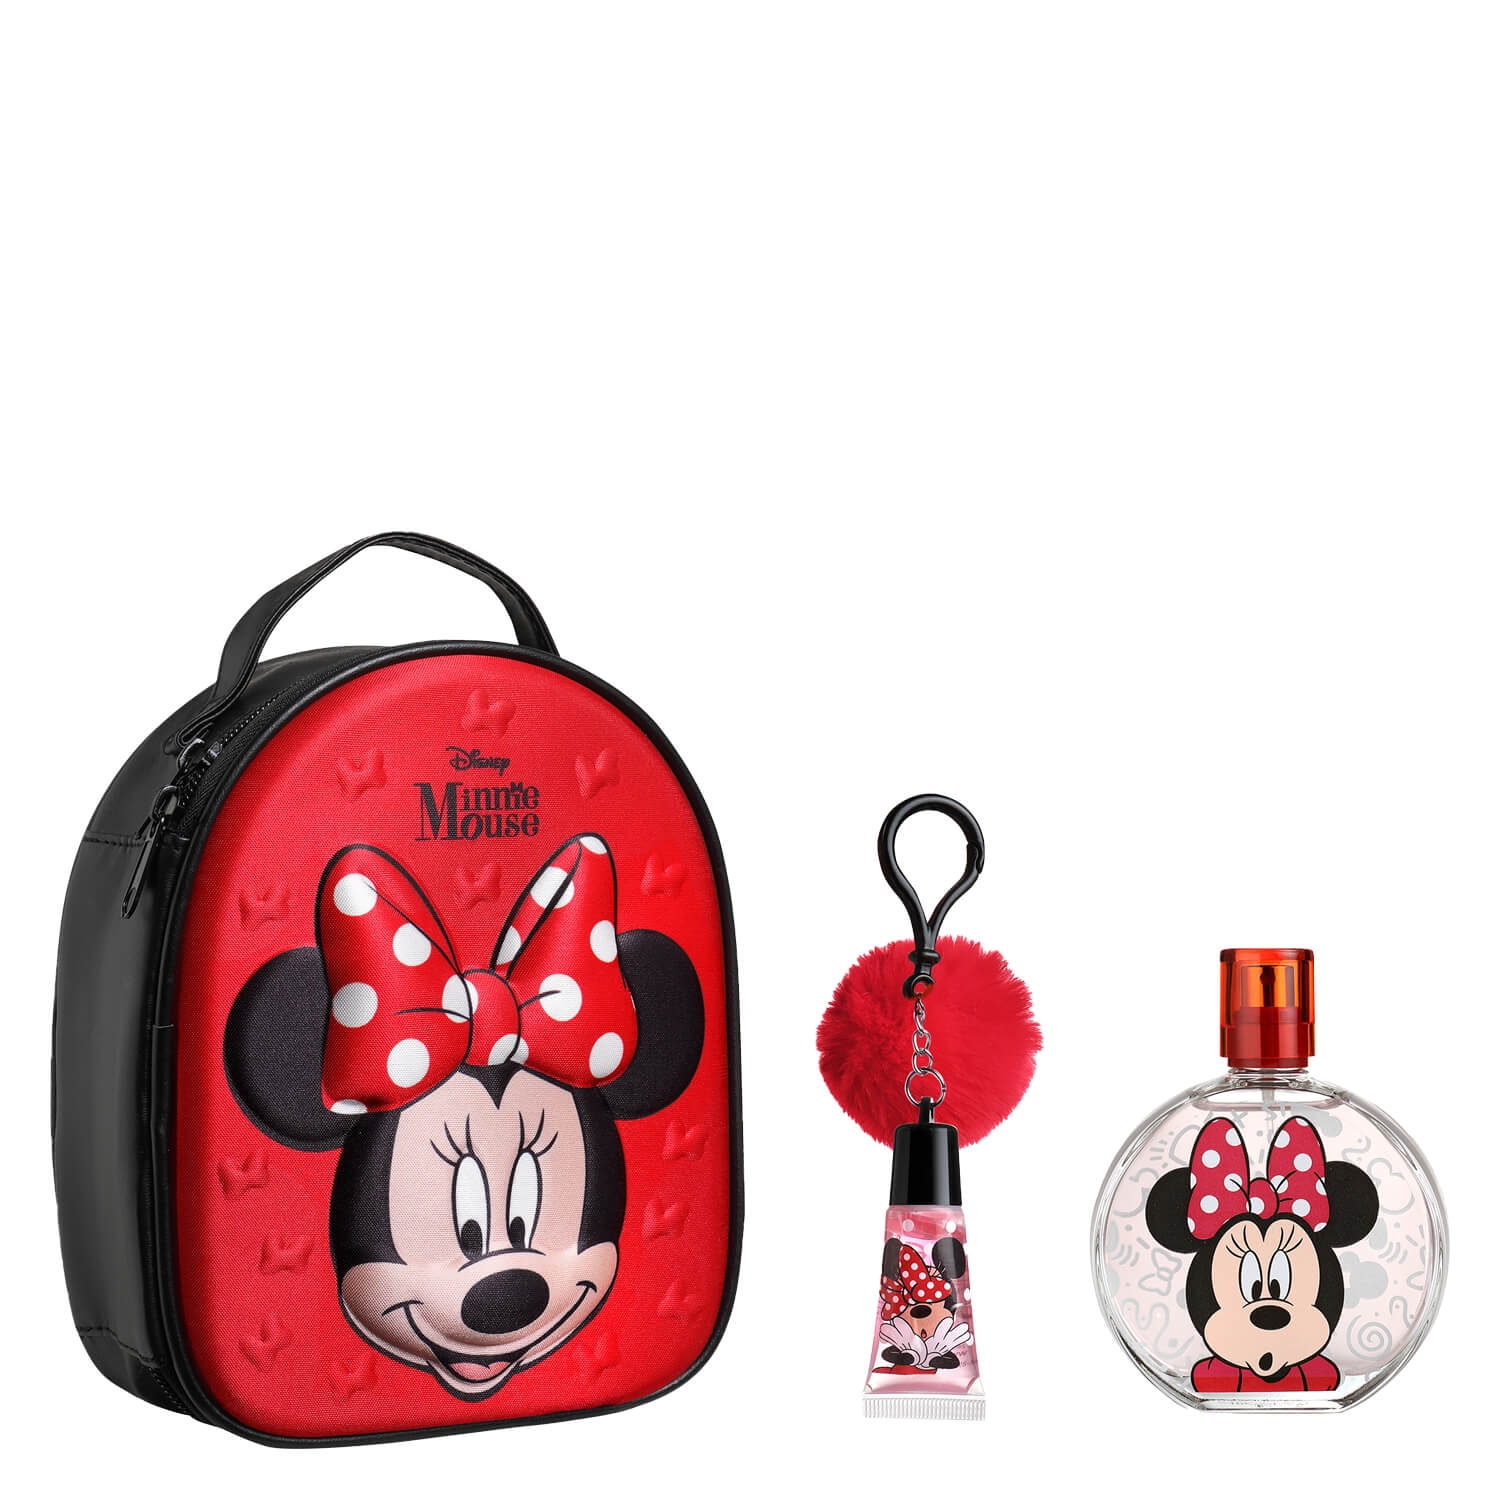 Produktbild von Kids Specials - Minnie Mouse Beauty Set